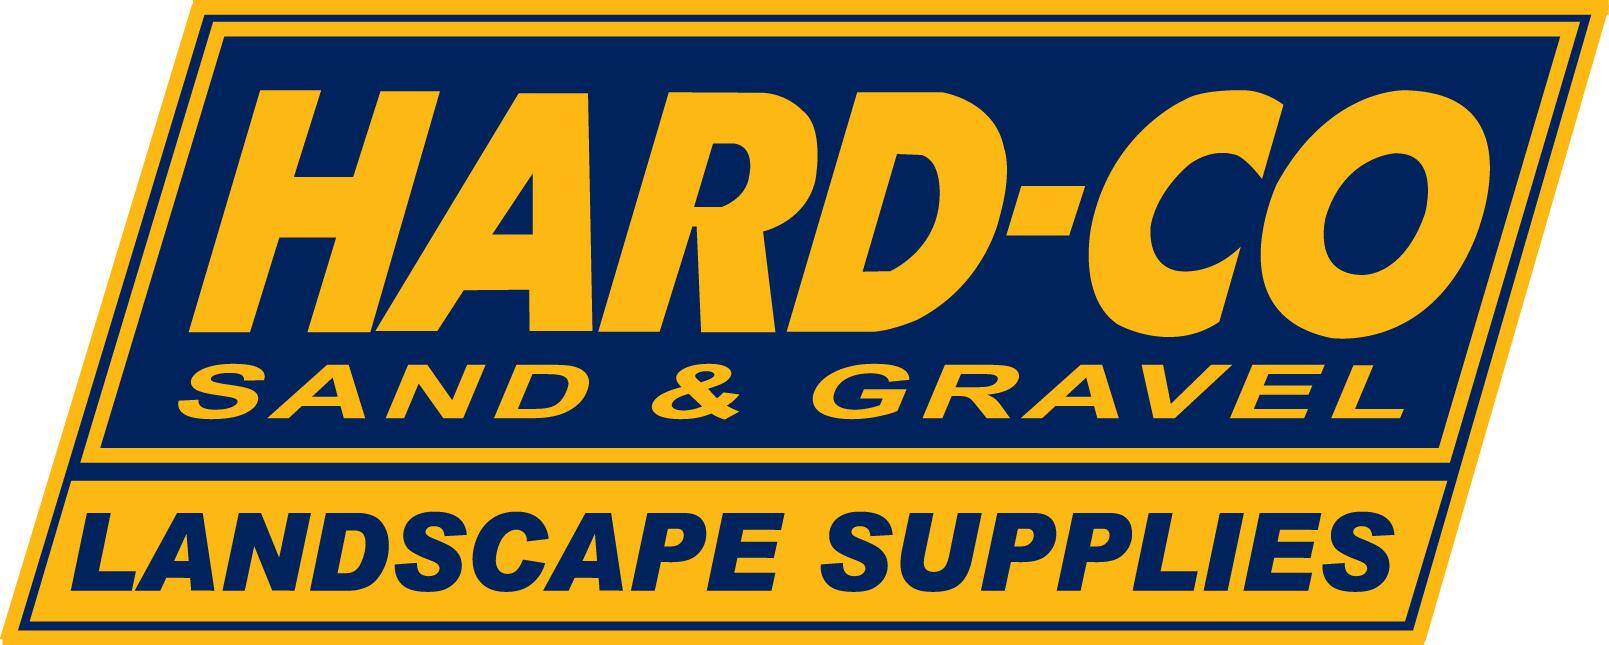 Hard-Co Sand & Gravel